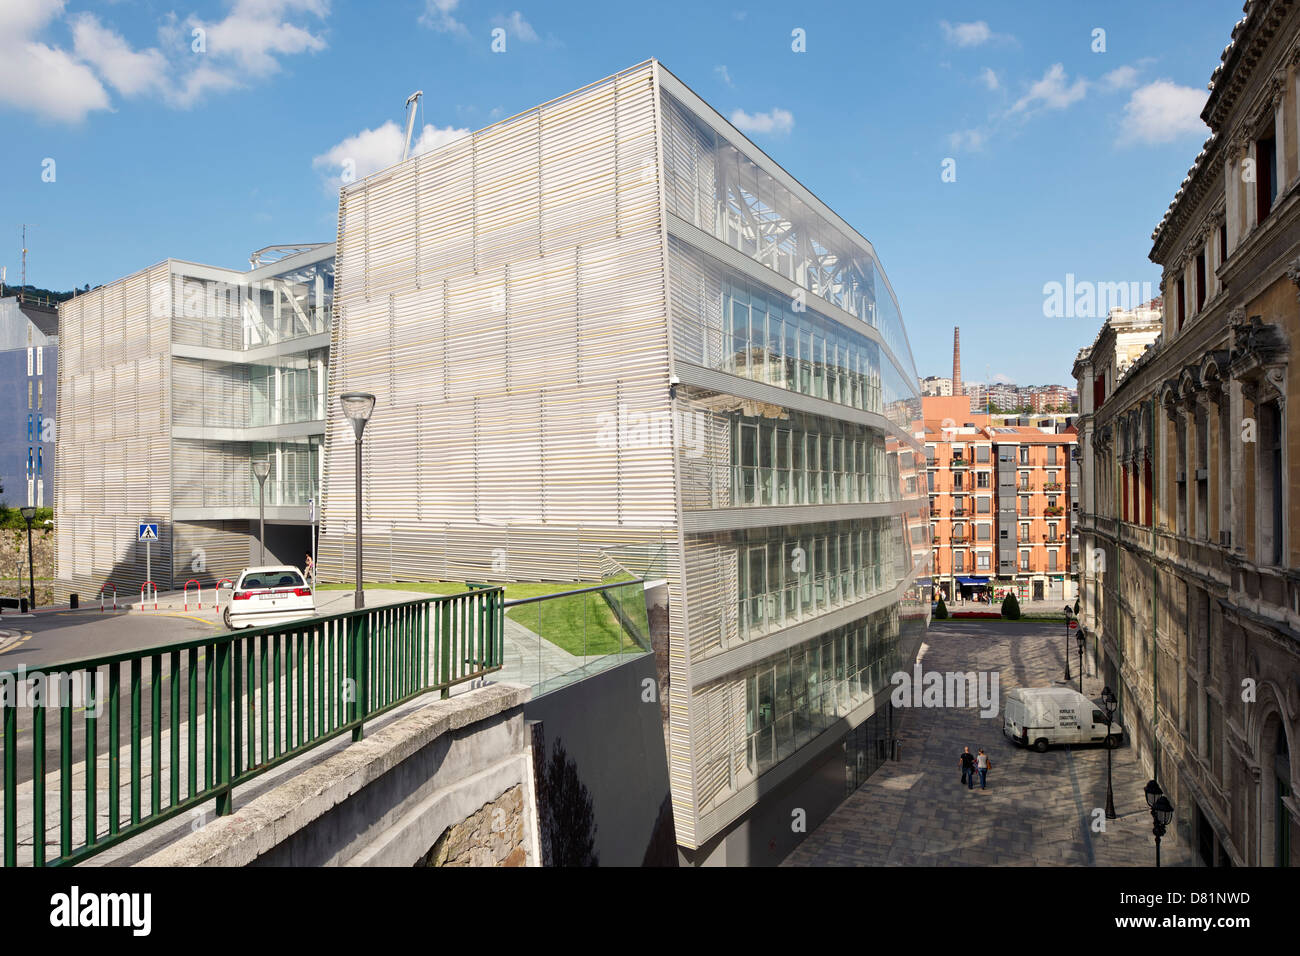 Conseil municipal de Bilbao, Bilbao, Espagne. Architecte : IMB Arquitectos , 2010. Portrait de plaza entre bâtiments anciens et nouveaux. Banque D'Images